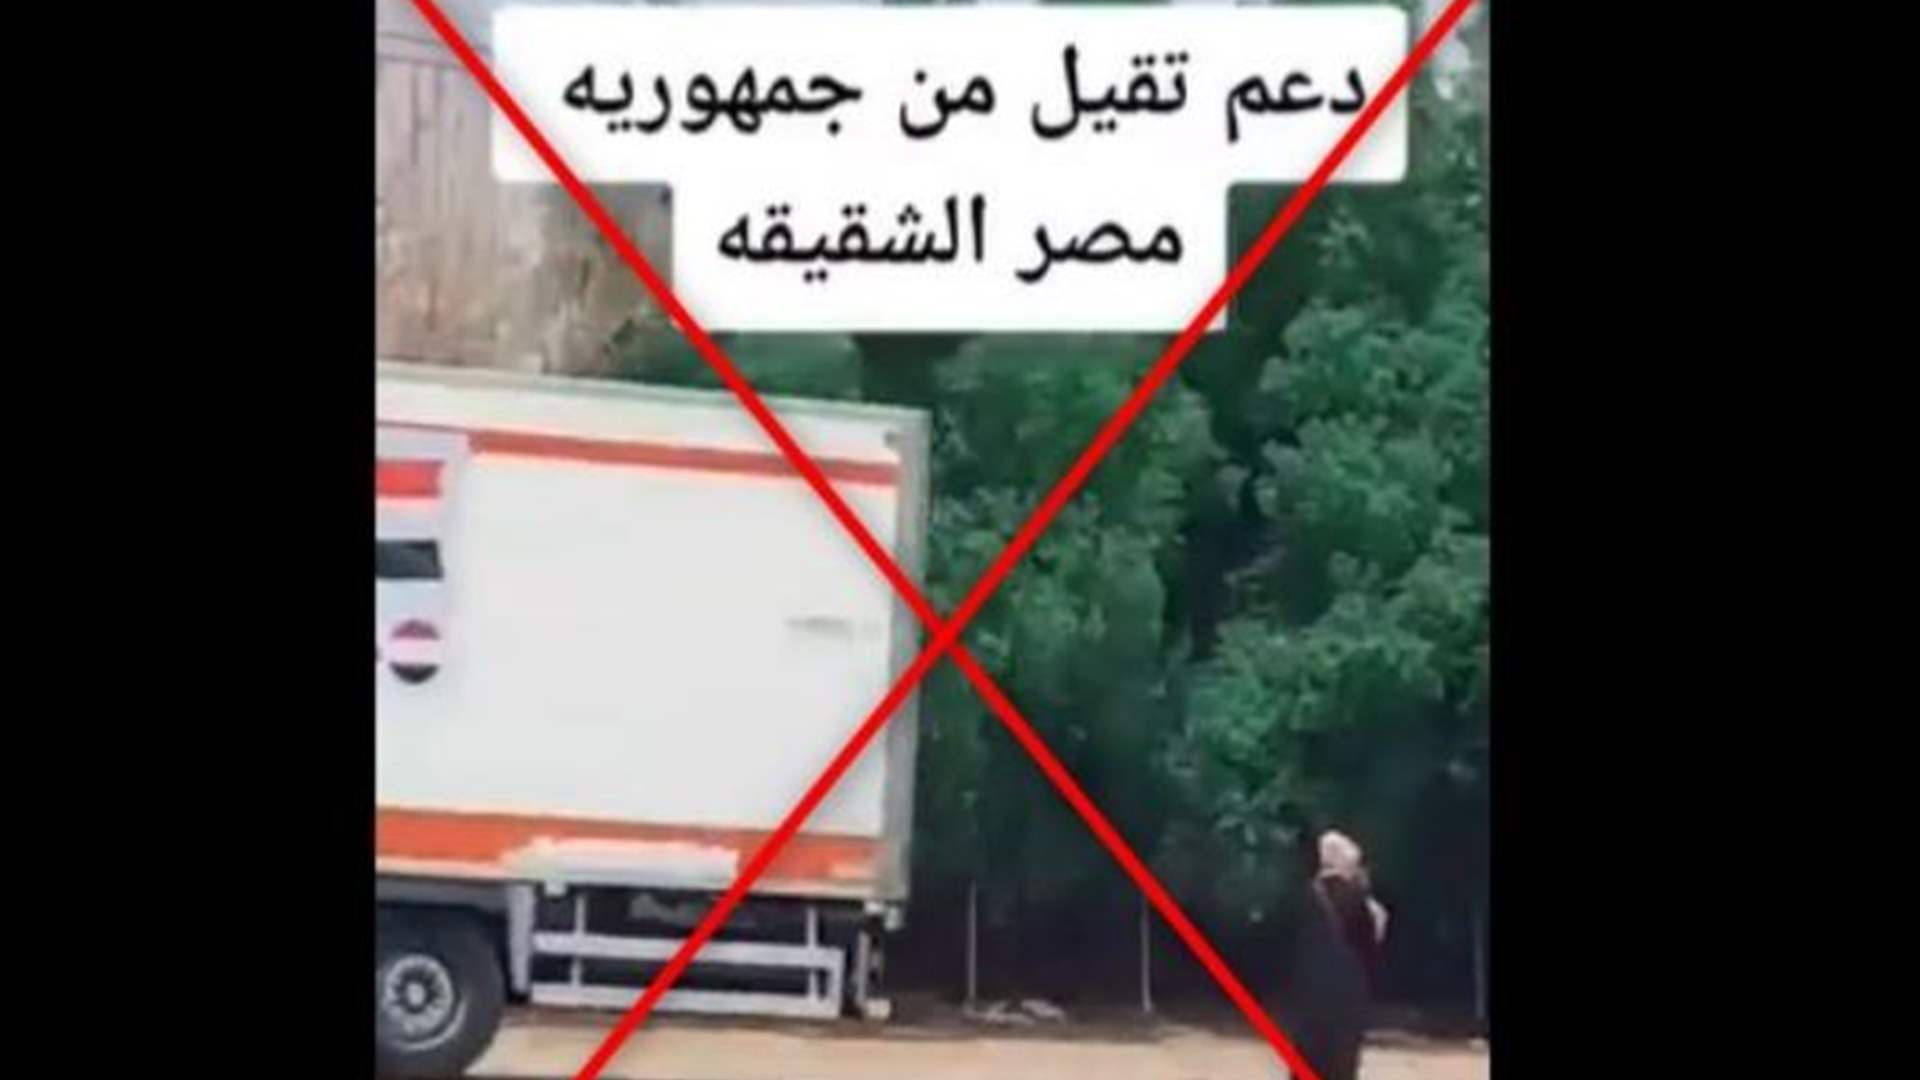 فيديو يظهر قافلات مساعدات أرسلتها مصر إلى السودان... قديم؟